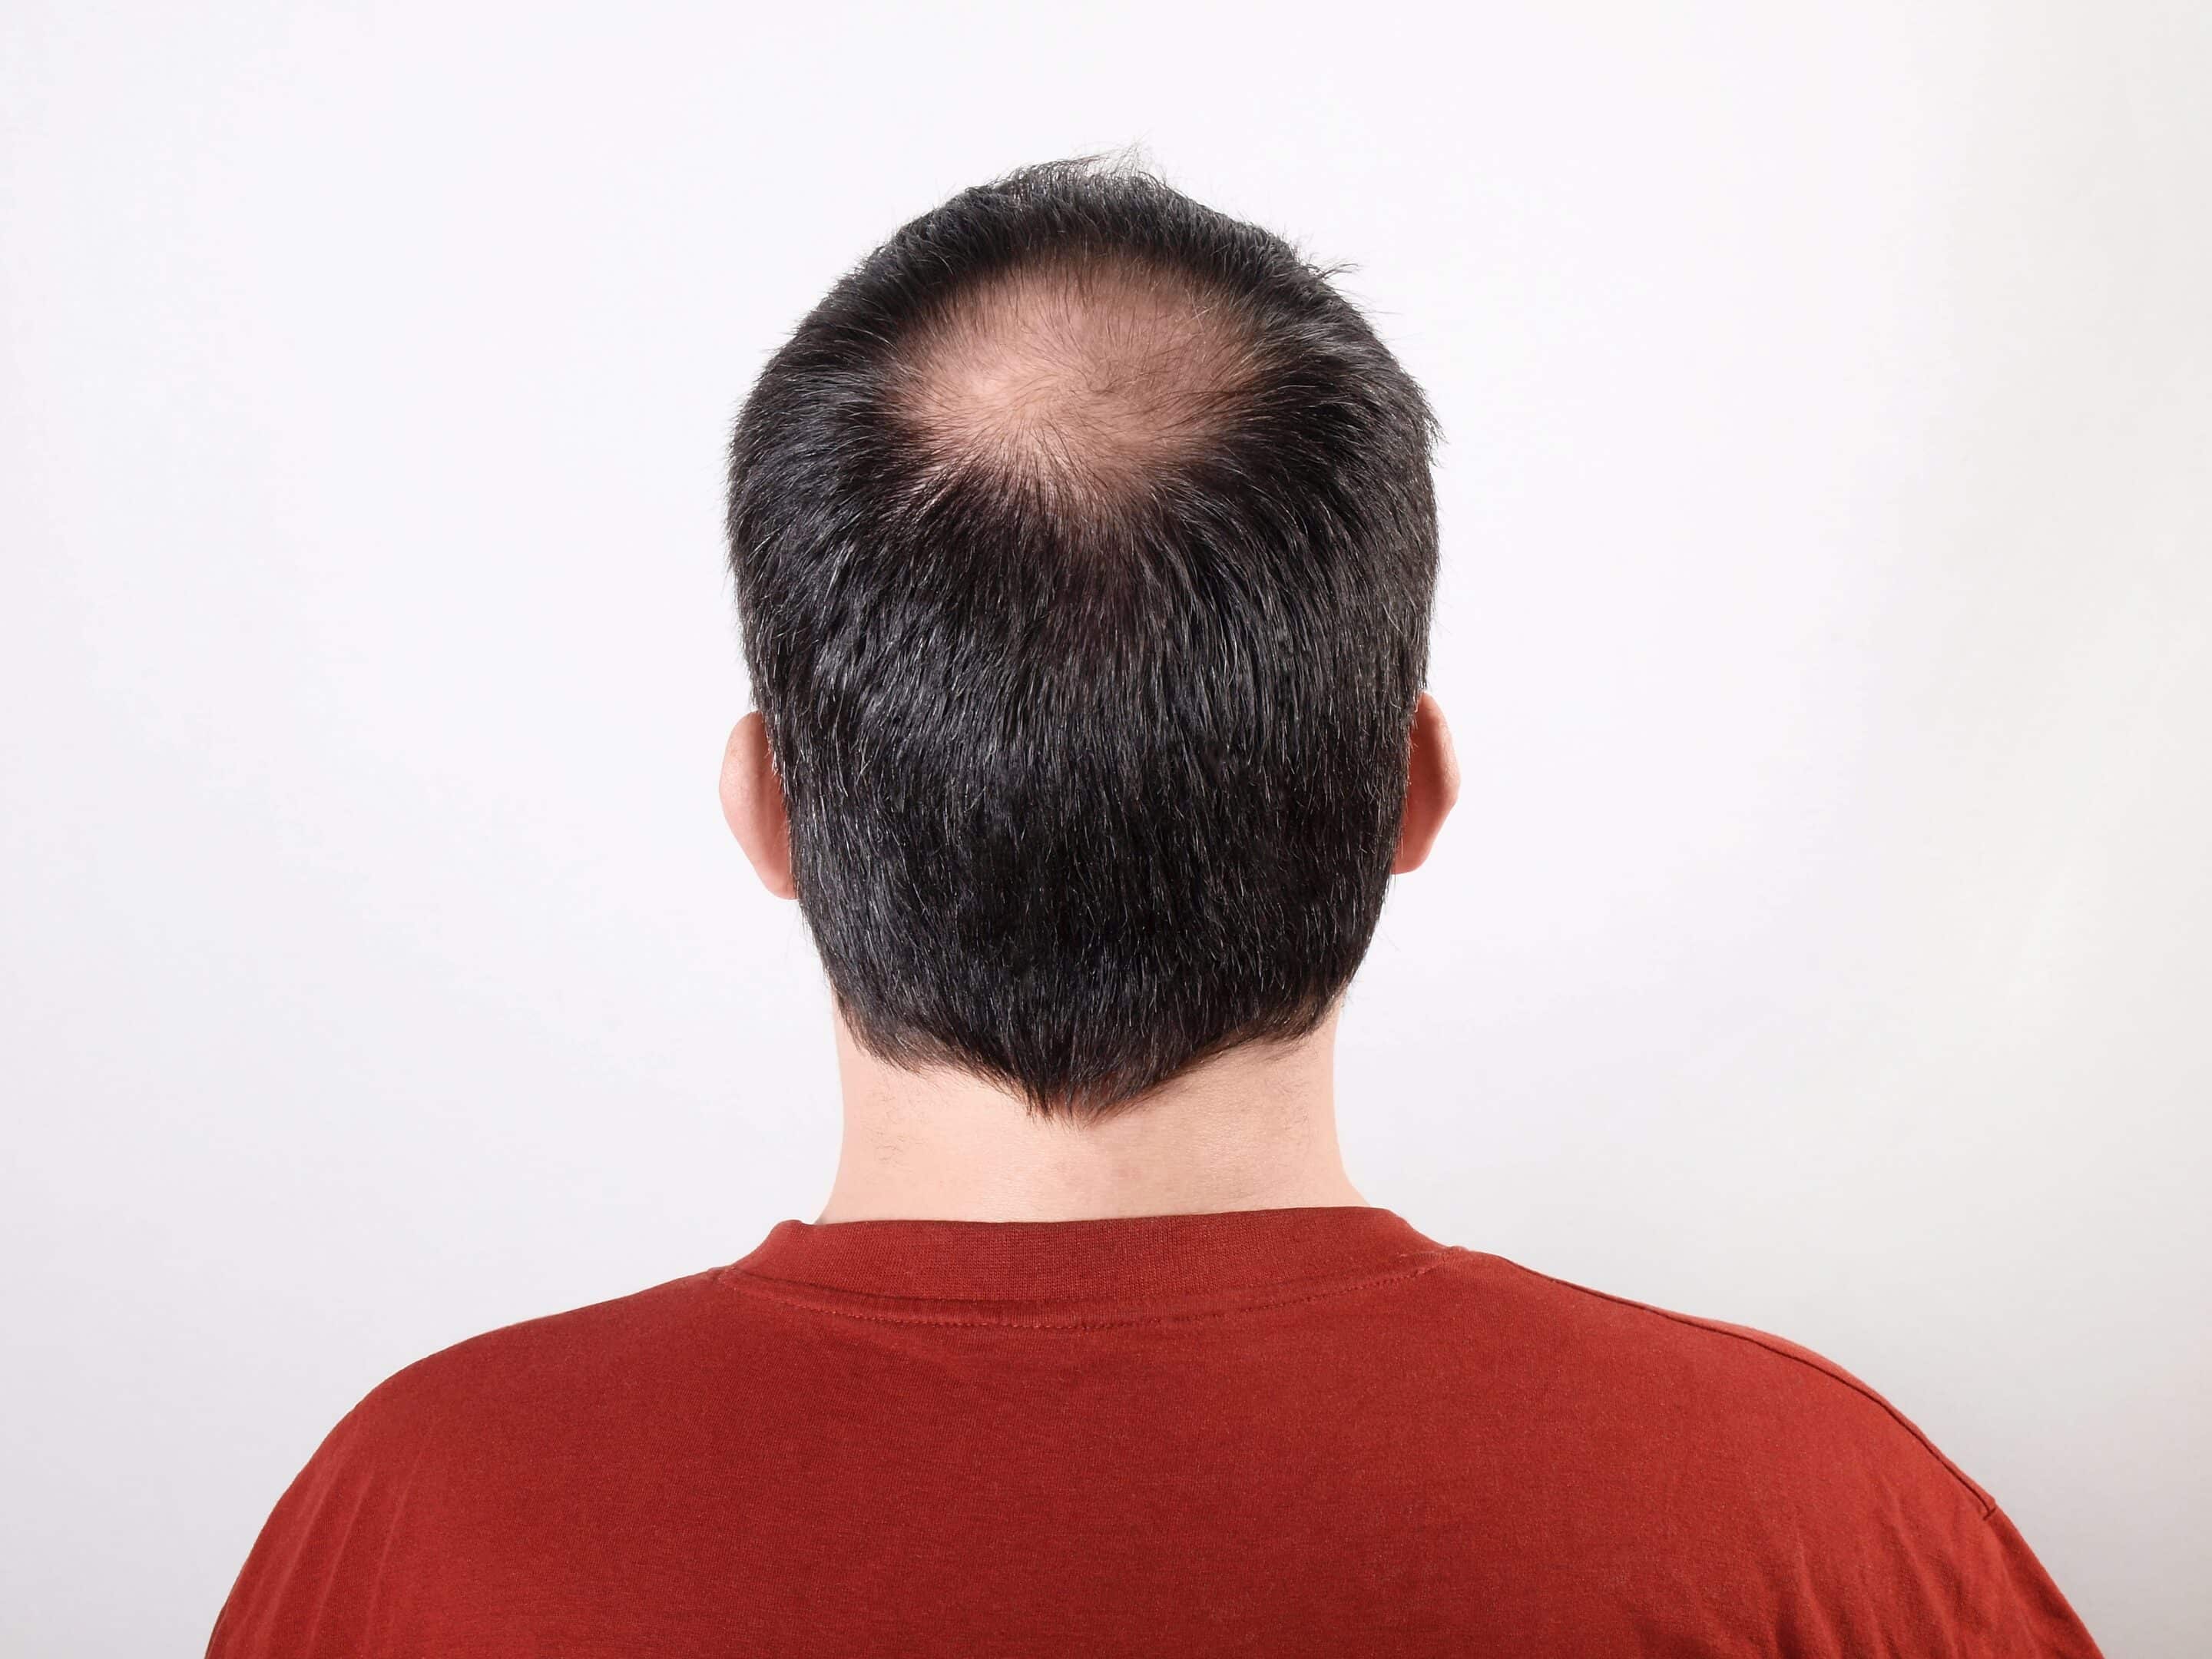 Ein Patient zeigt seinen durch Stress entstandenen kreisrunden Haarausfall.